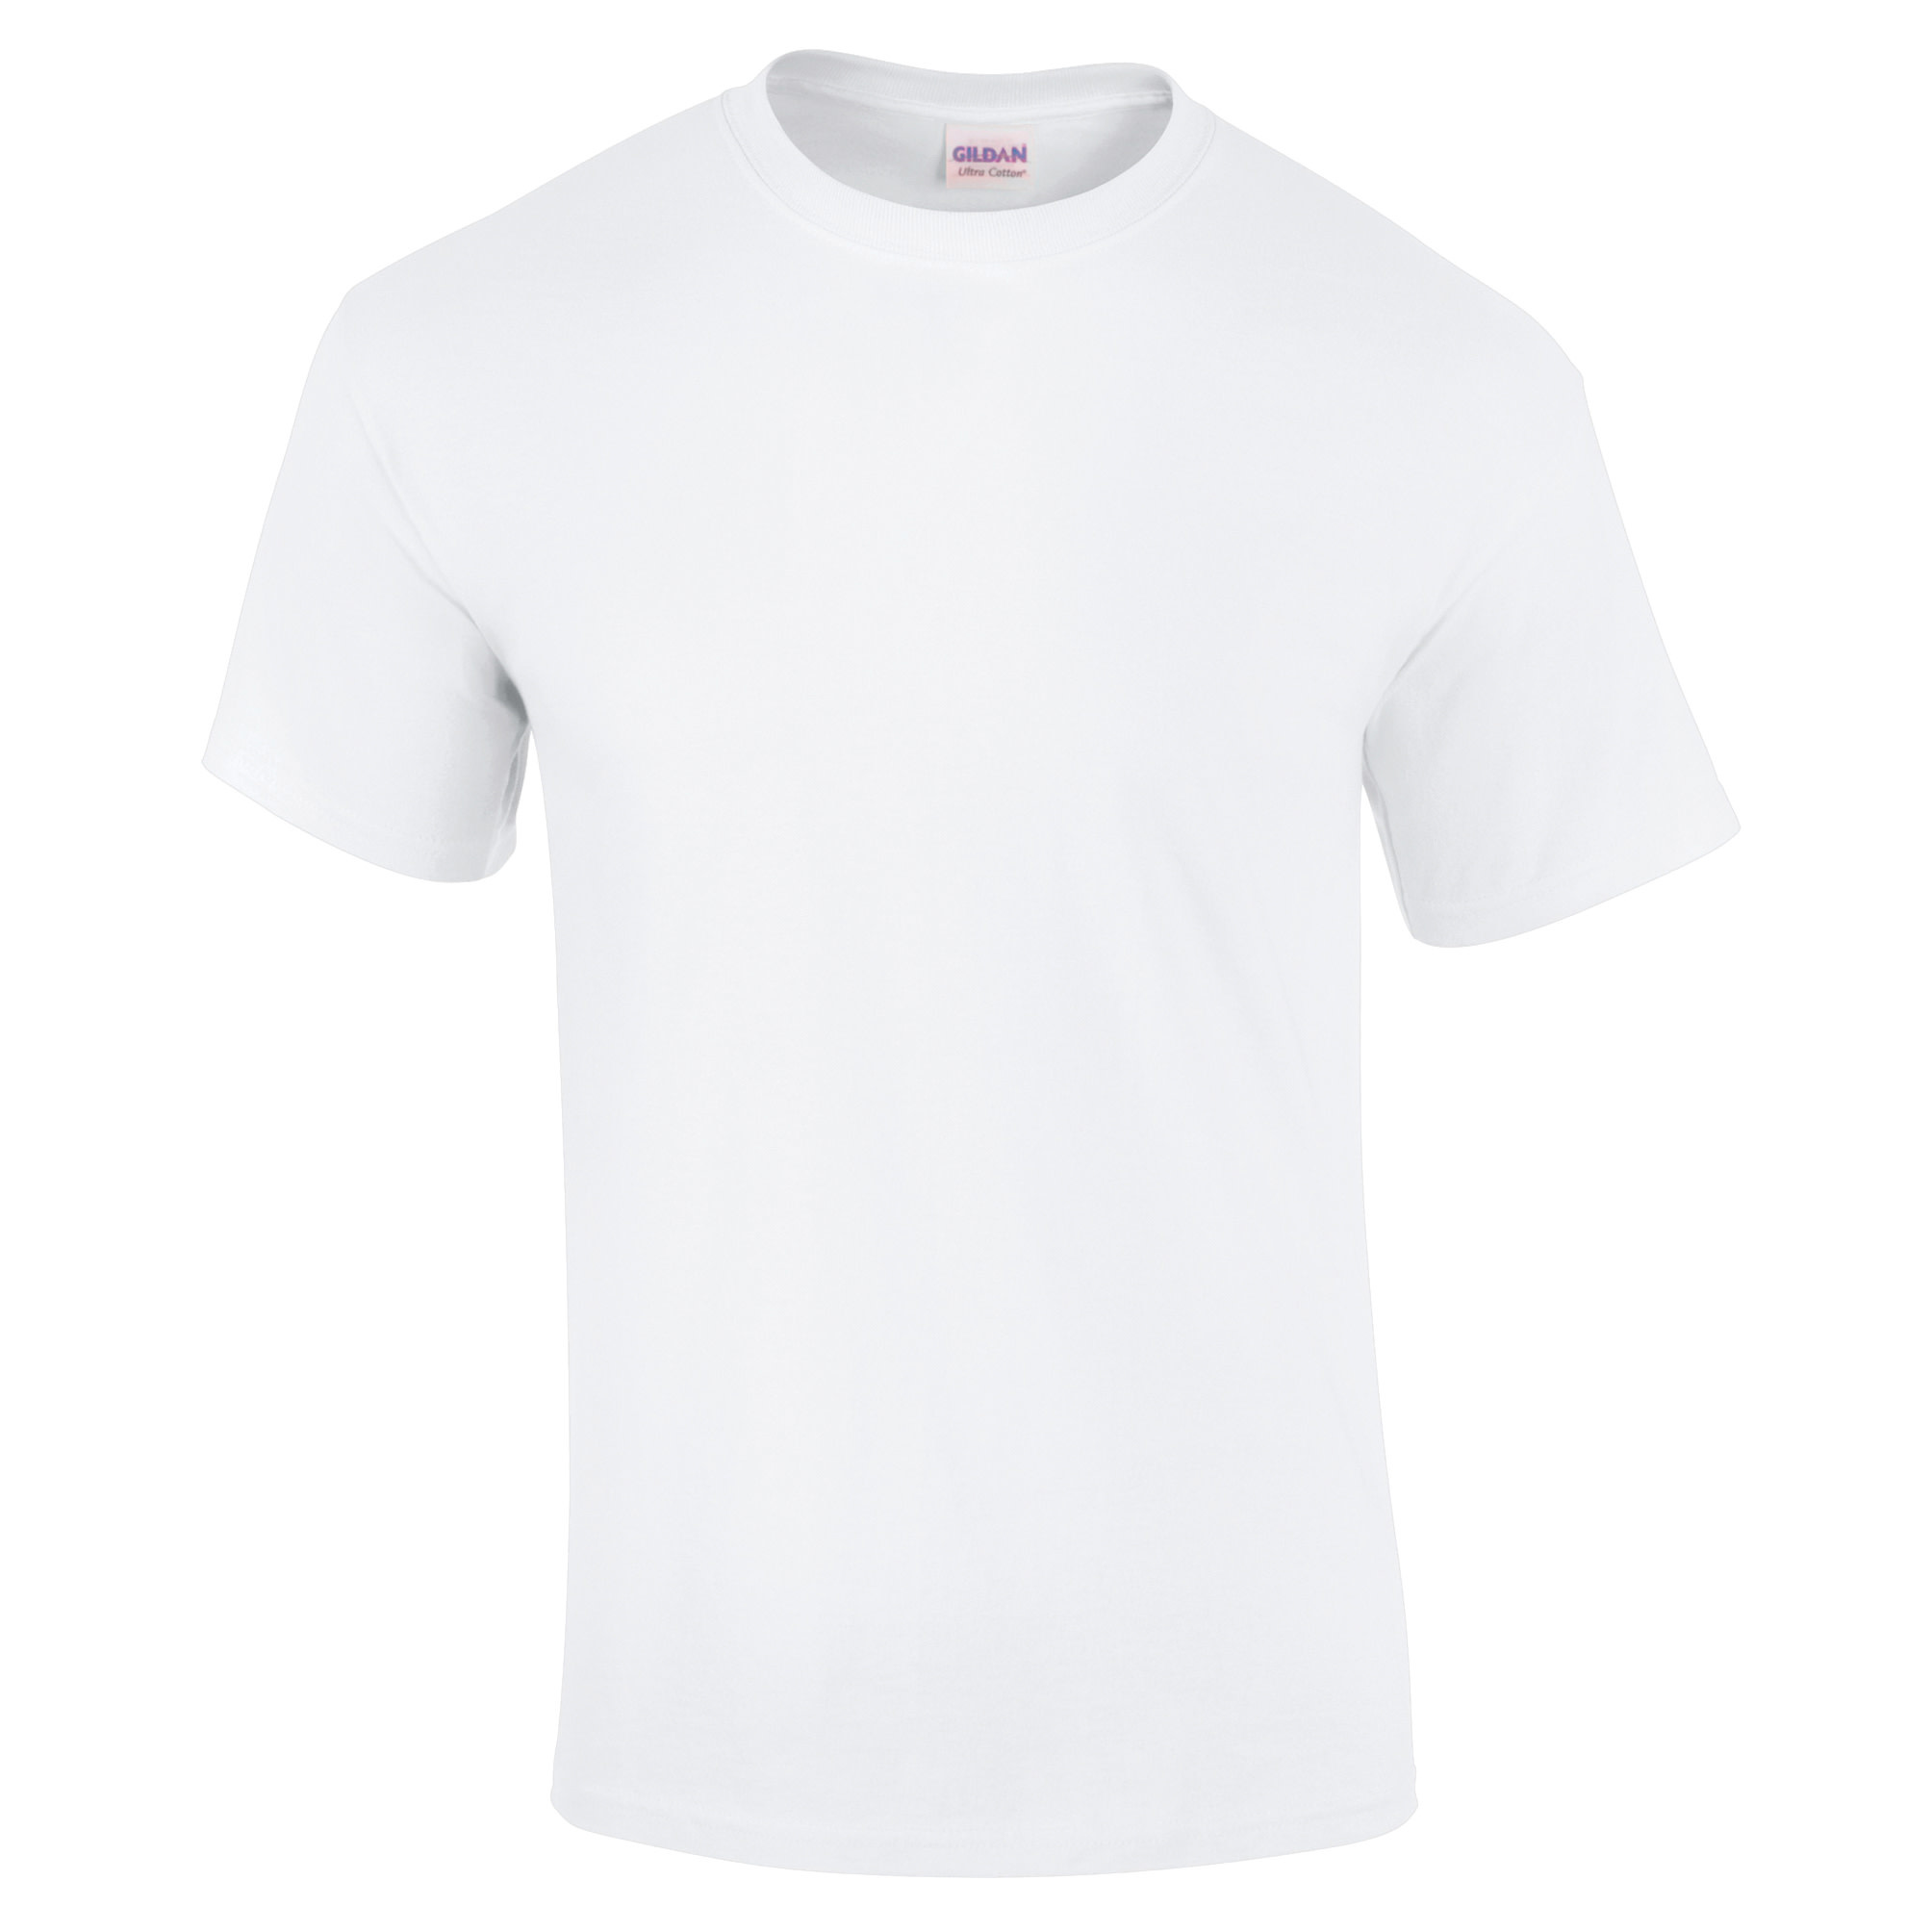 Adults Ultra Cotton T Shirt